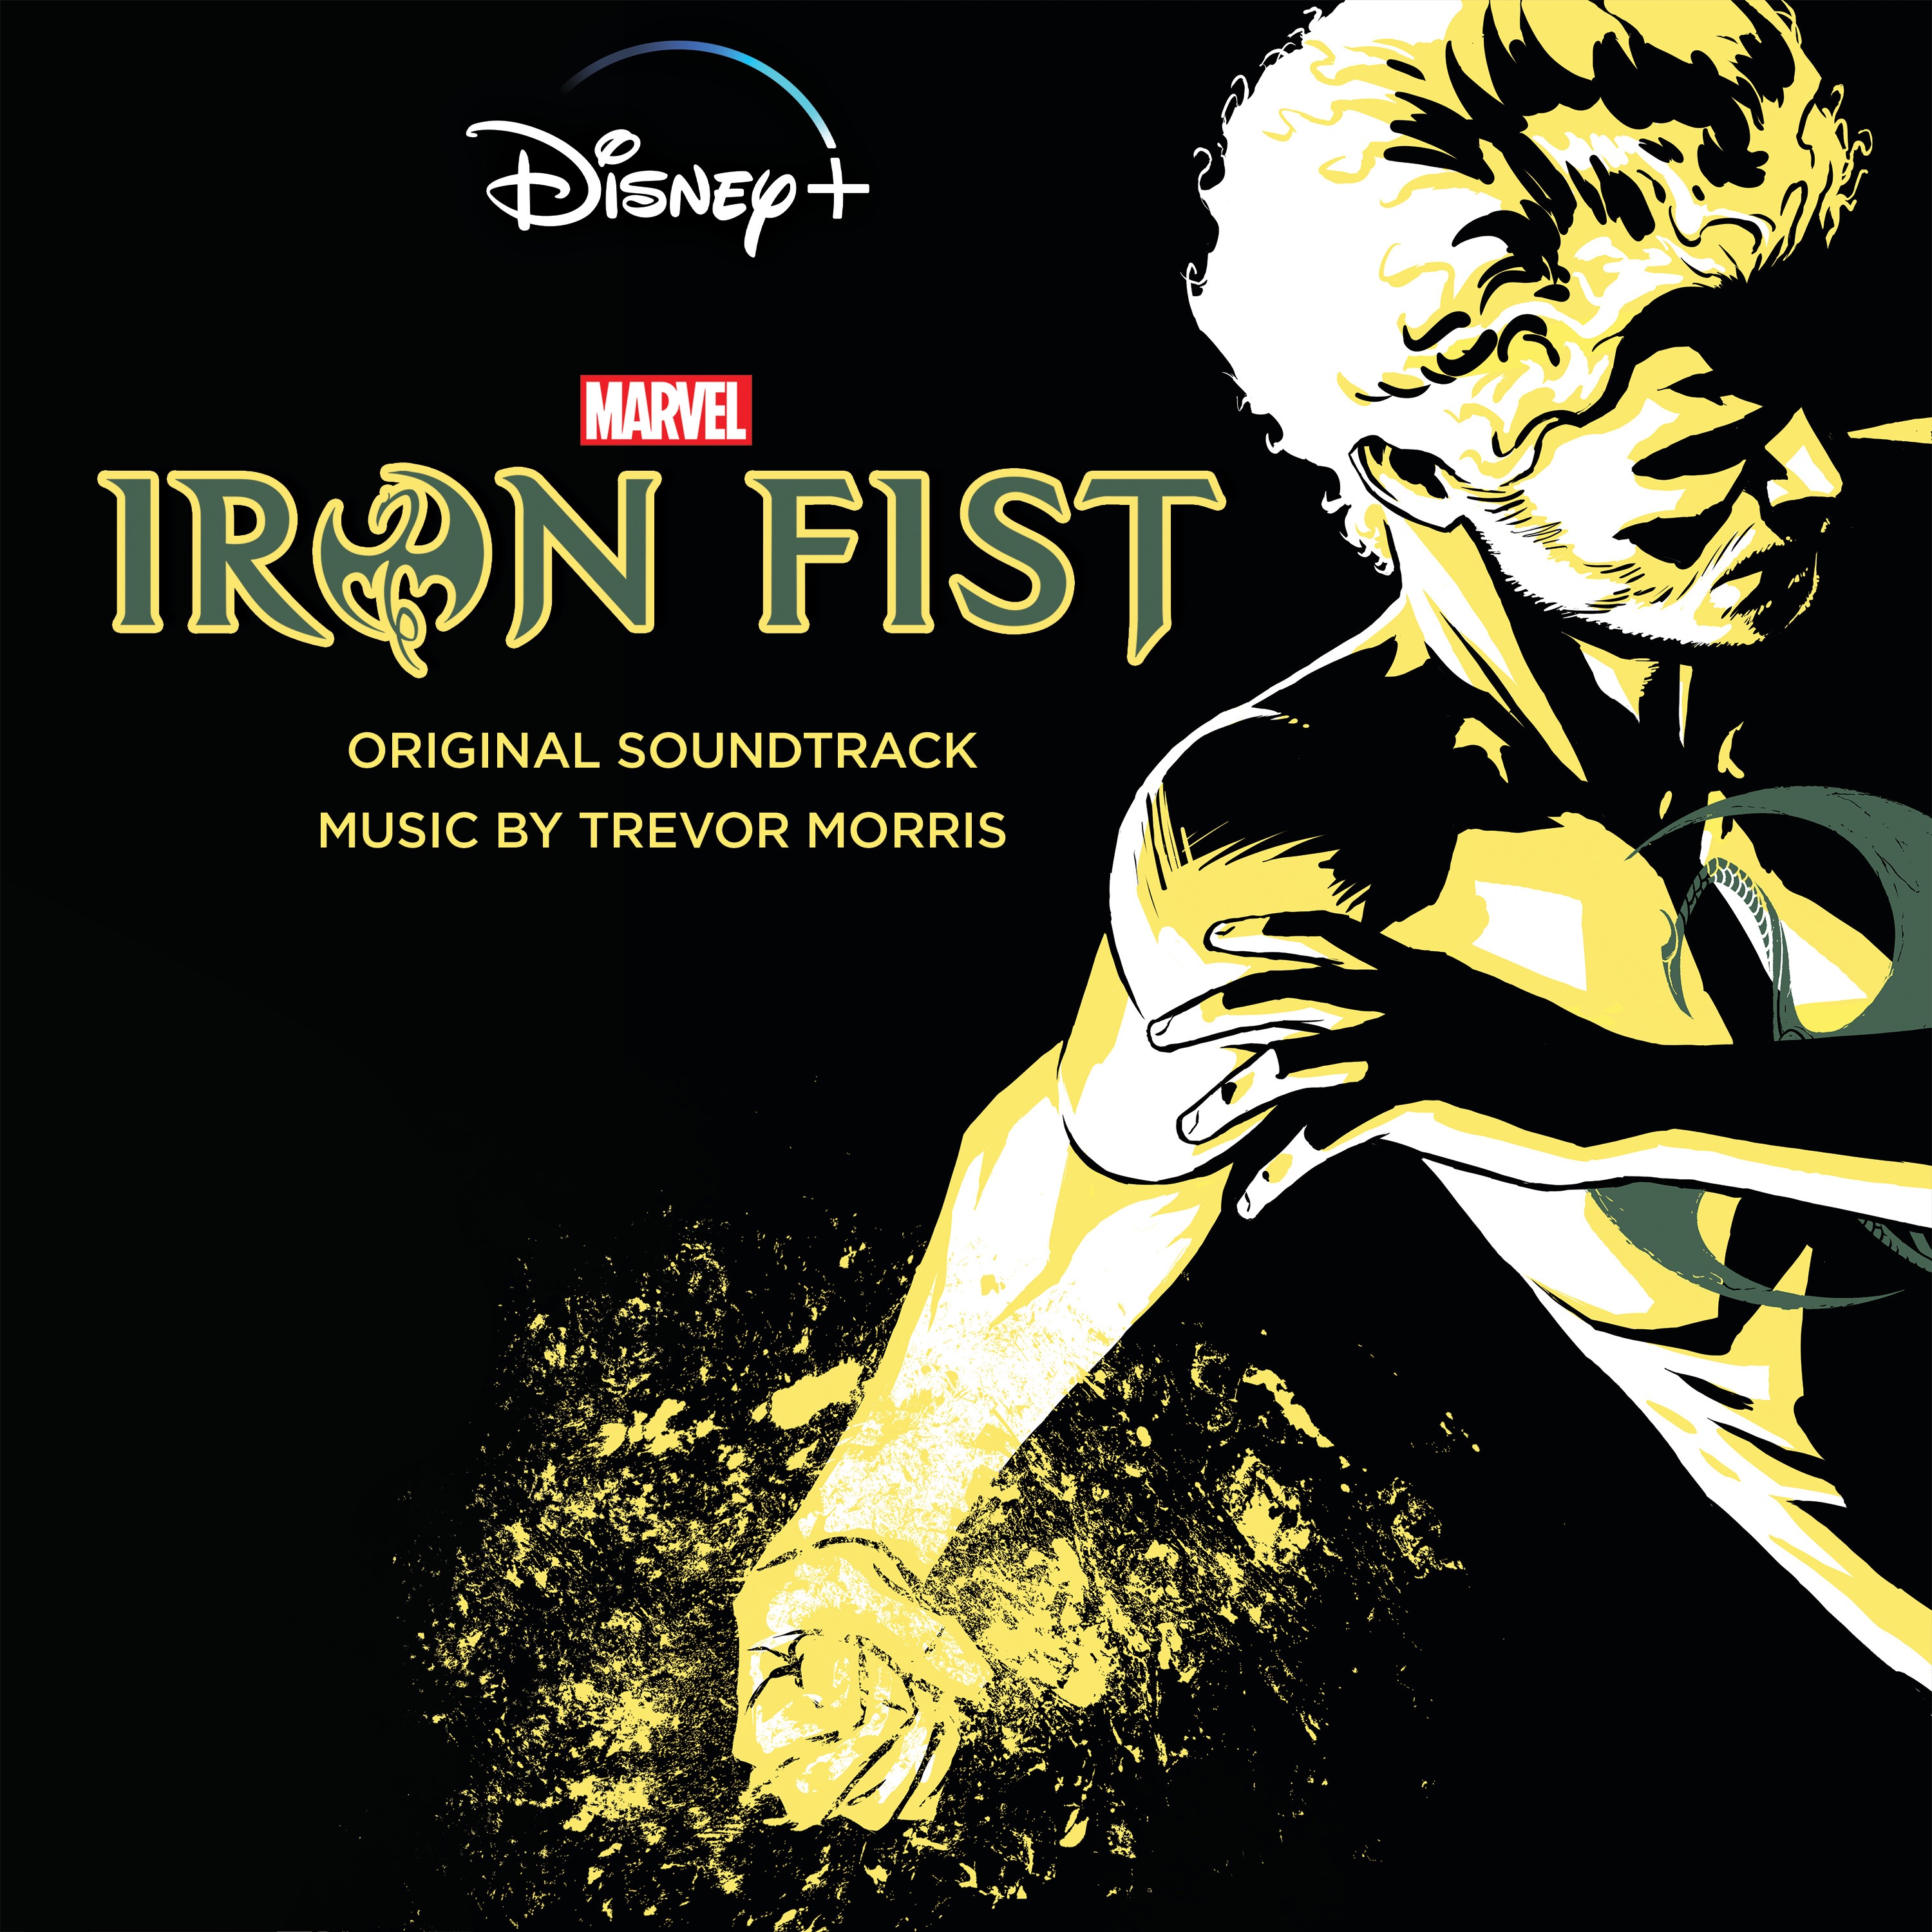 Iron Fist Poster  Iron fist marvel, Iron fist, Iron fist netflix